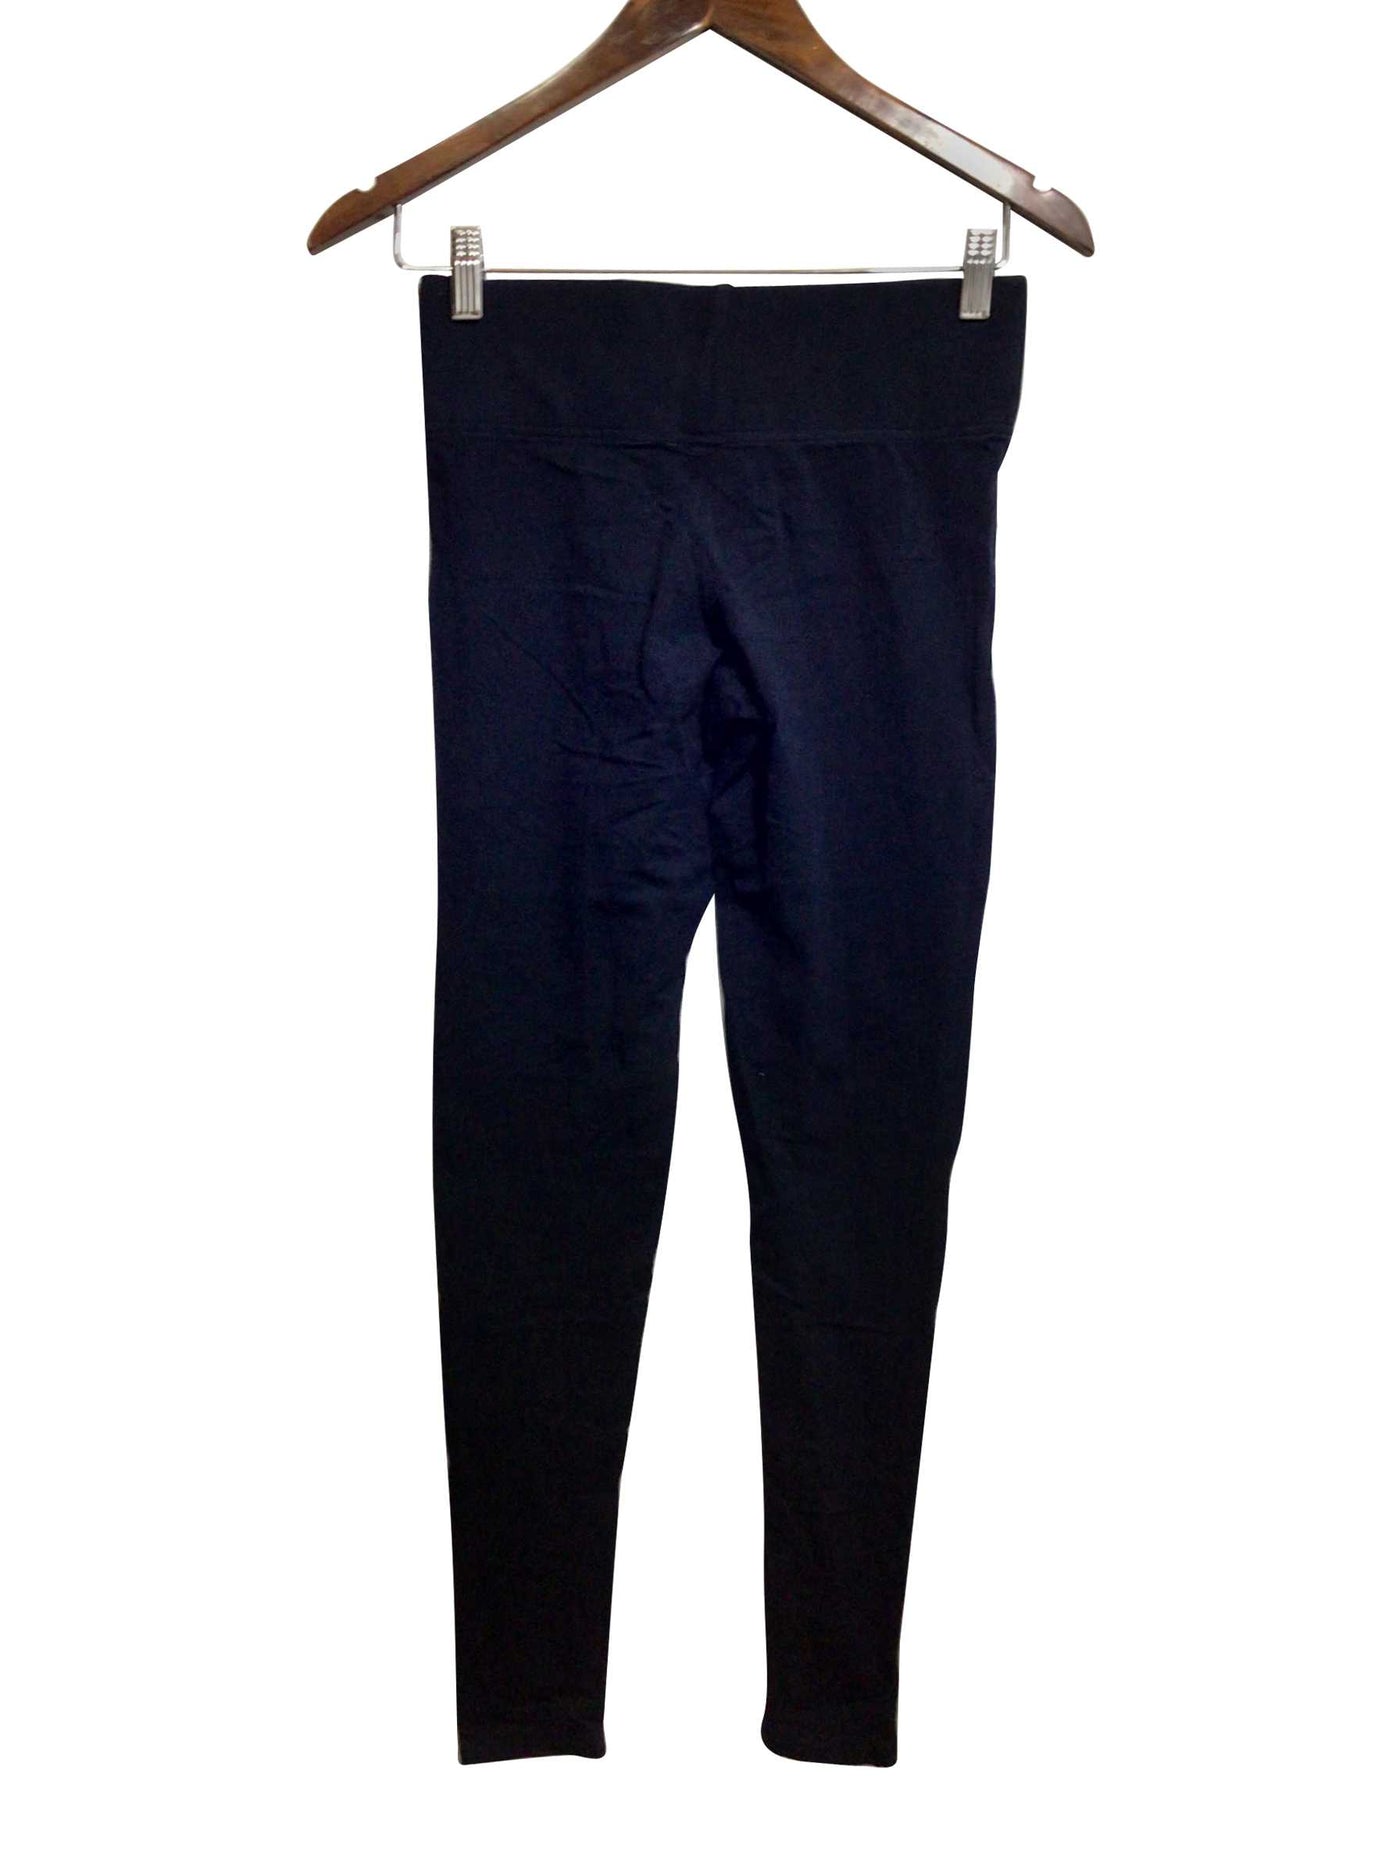 SUZY SHIER Regular fit Activewear Legging in Black  -  S  11.99 Koop